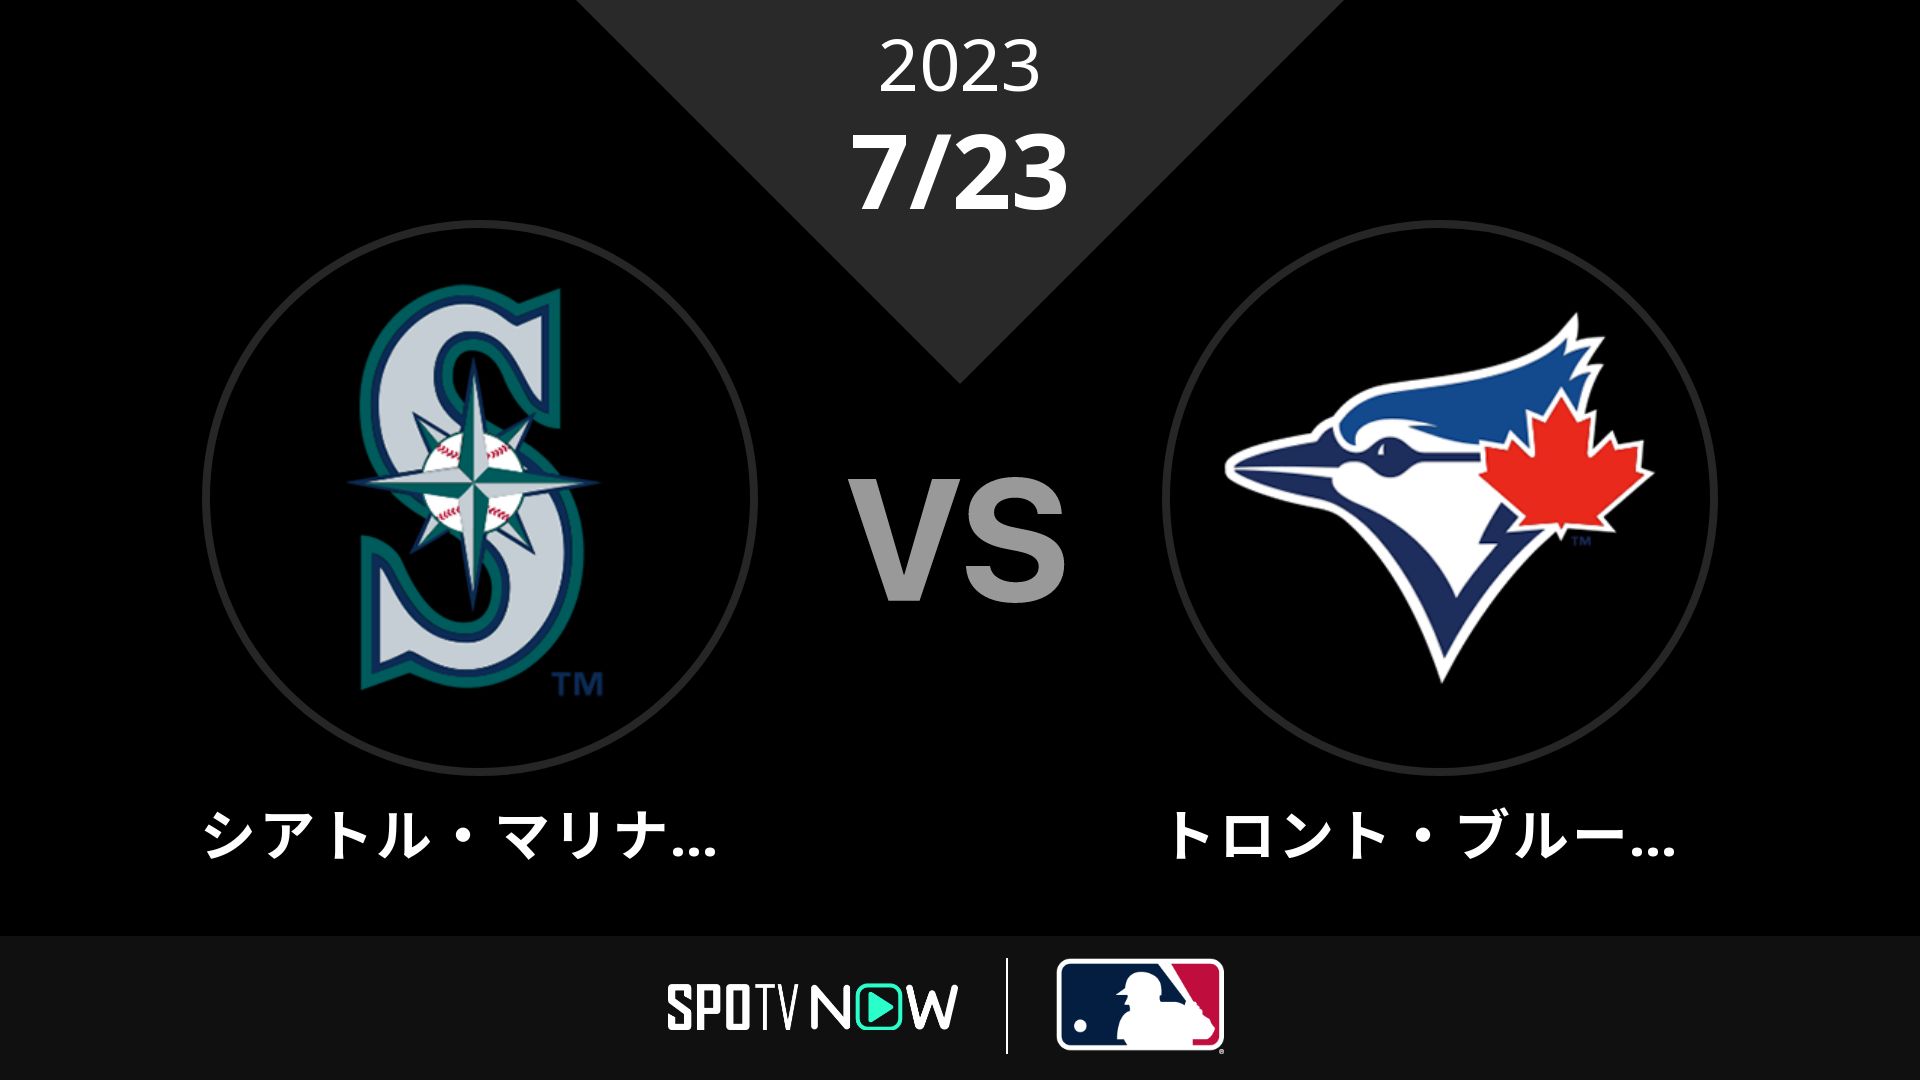 2023/7/23 マリナーズ vs ブルージェイズ [MLB]